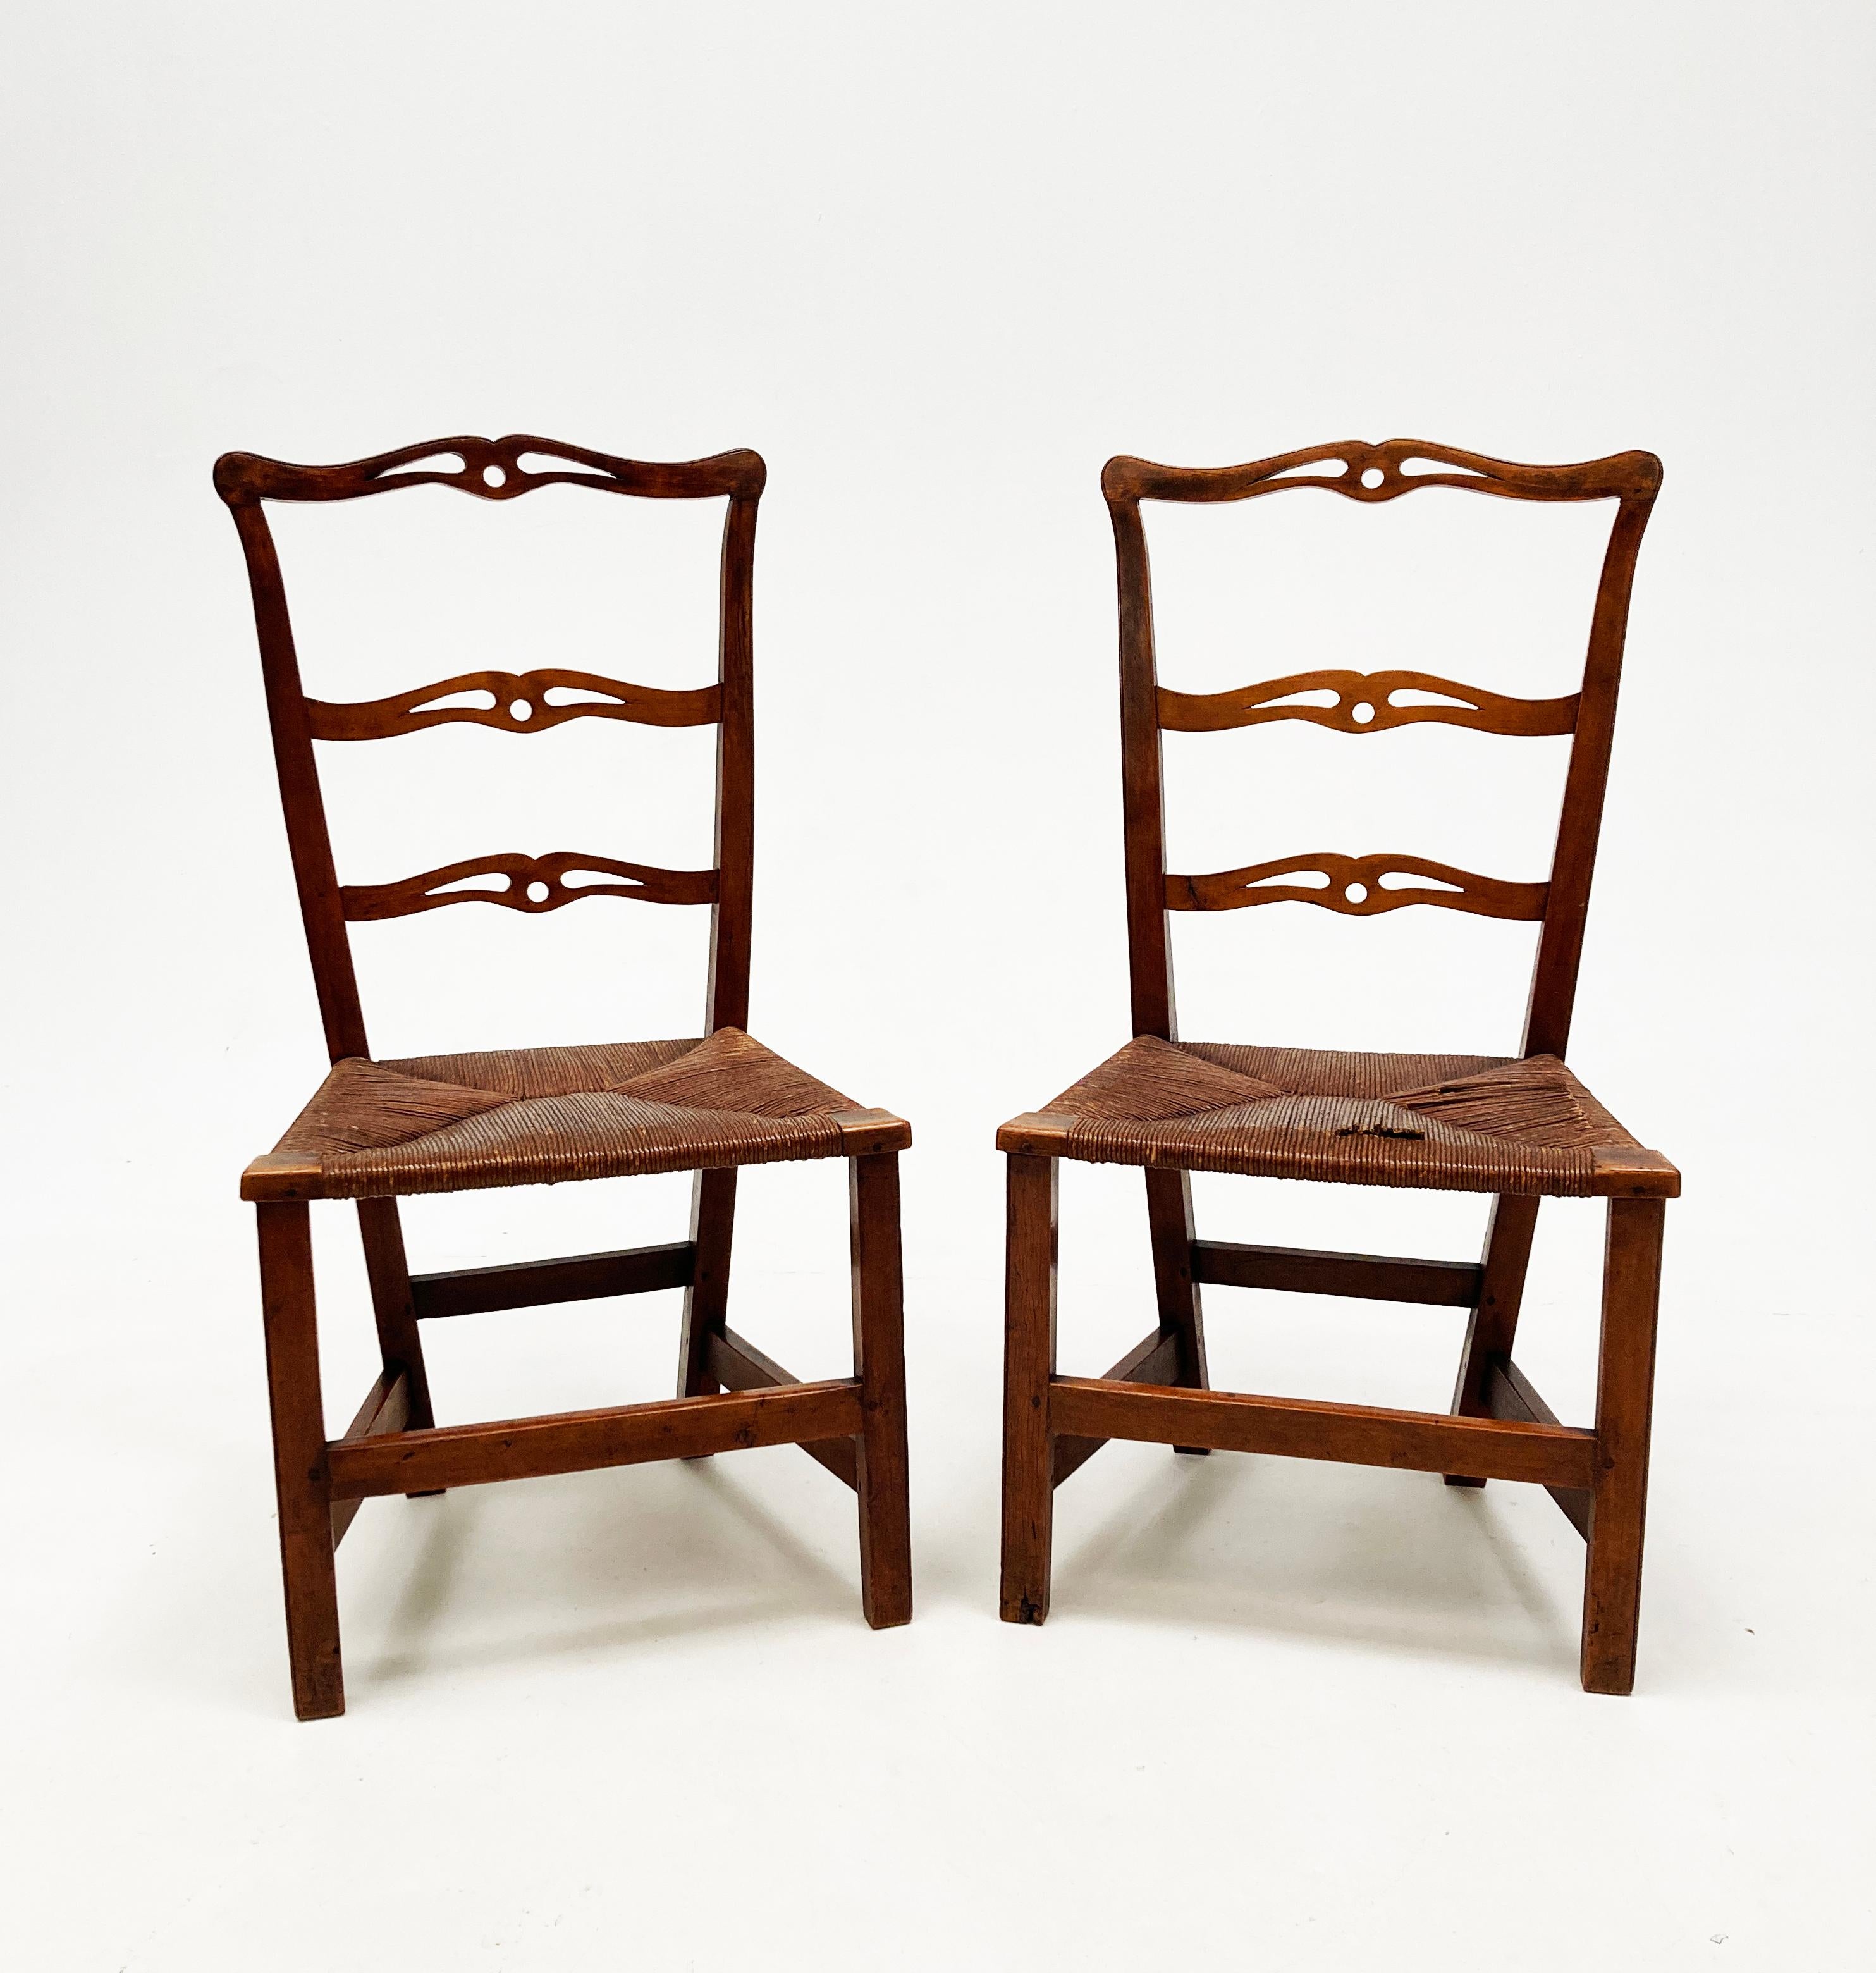 Si ces deux chaises pouvaient parler, l'histoire qu'elles pourraient partager. Ces chaises rares et très anciennes sont sculptées à la main et construites dans un style rustique primitif raffiné, reflétant l'époque. Utilisant un érable riche et